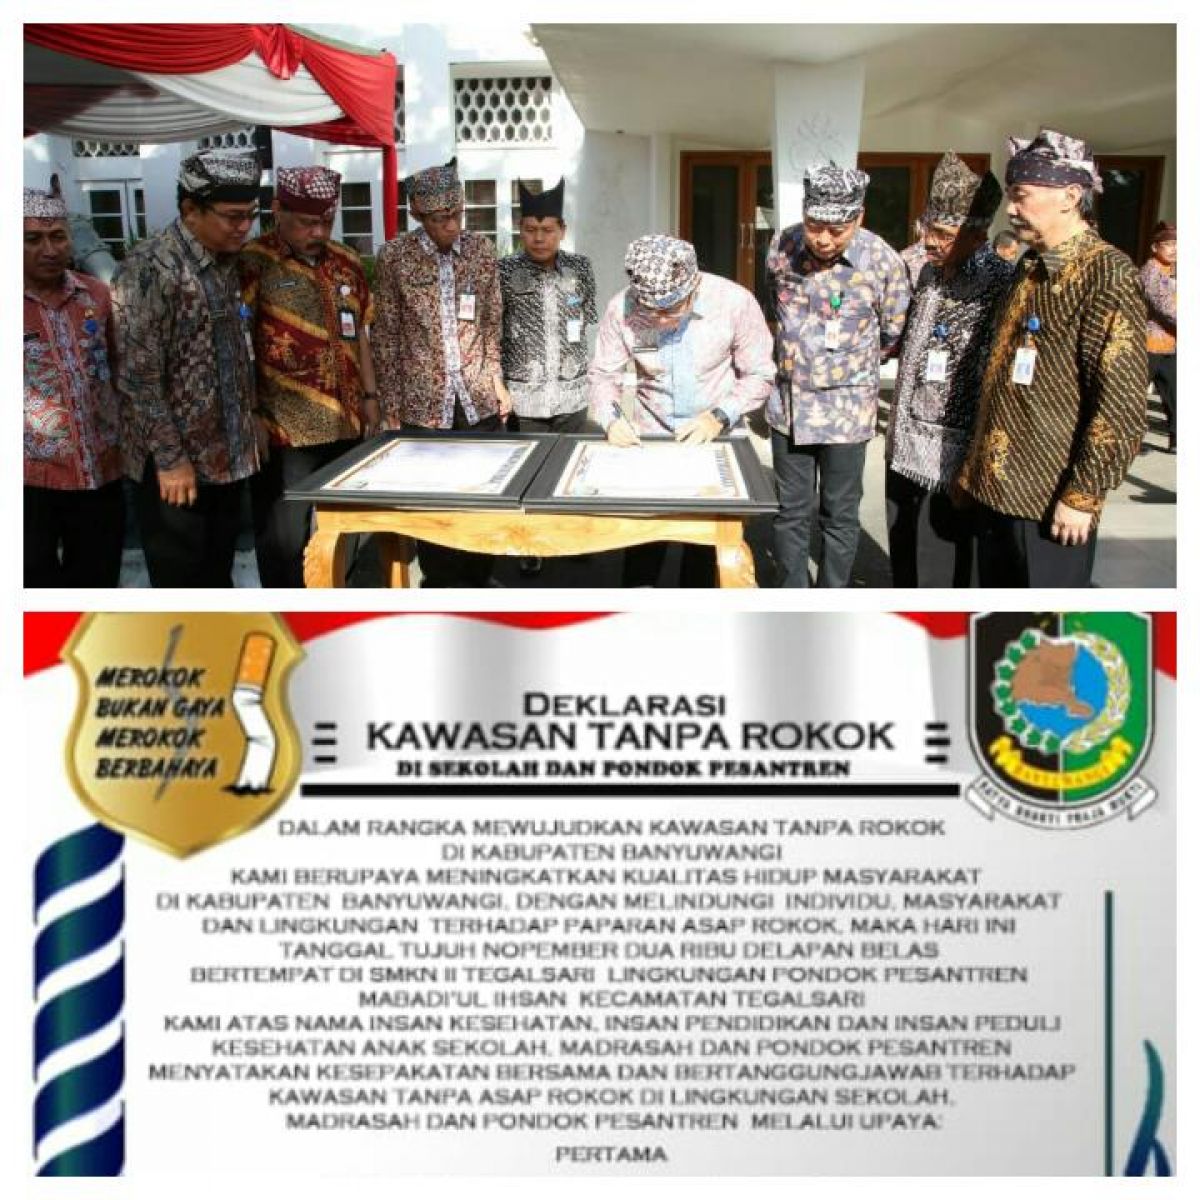 Deklarasi Kawasan Tanpa Rokok Kabupaten Banyuwangi'